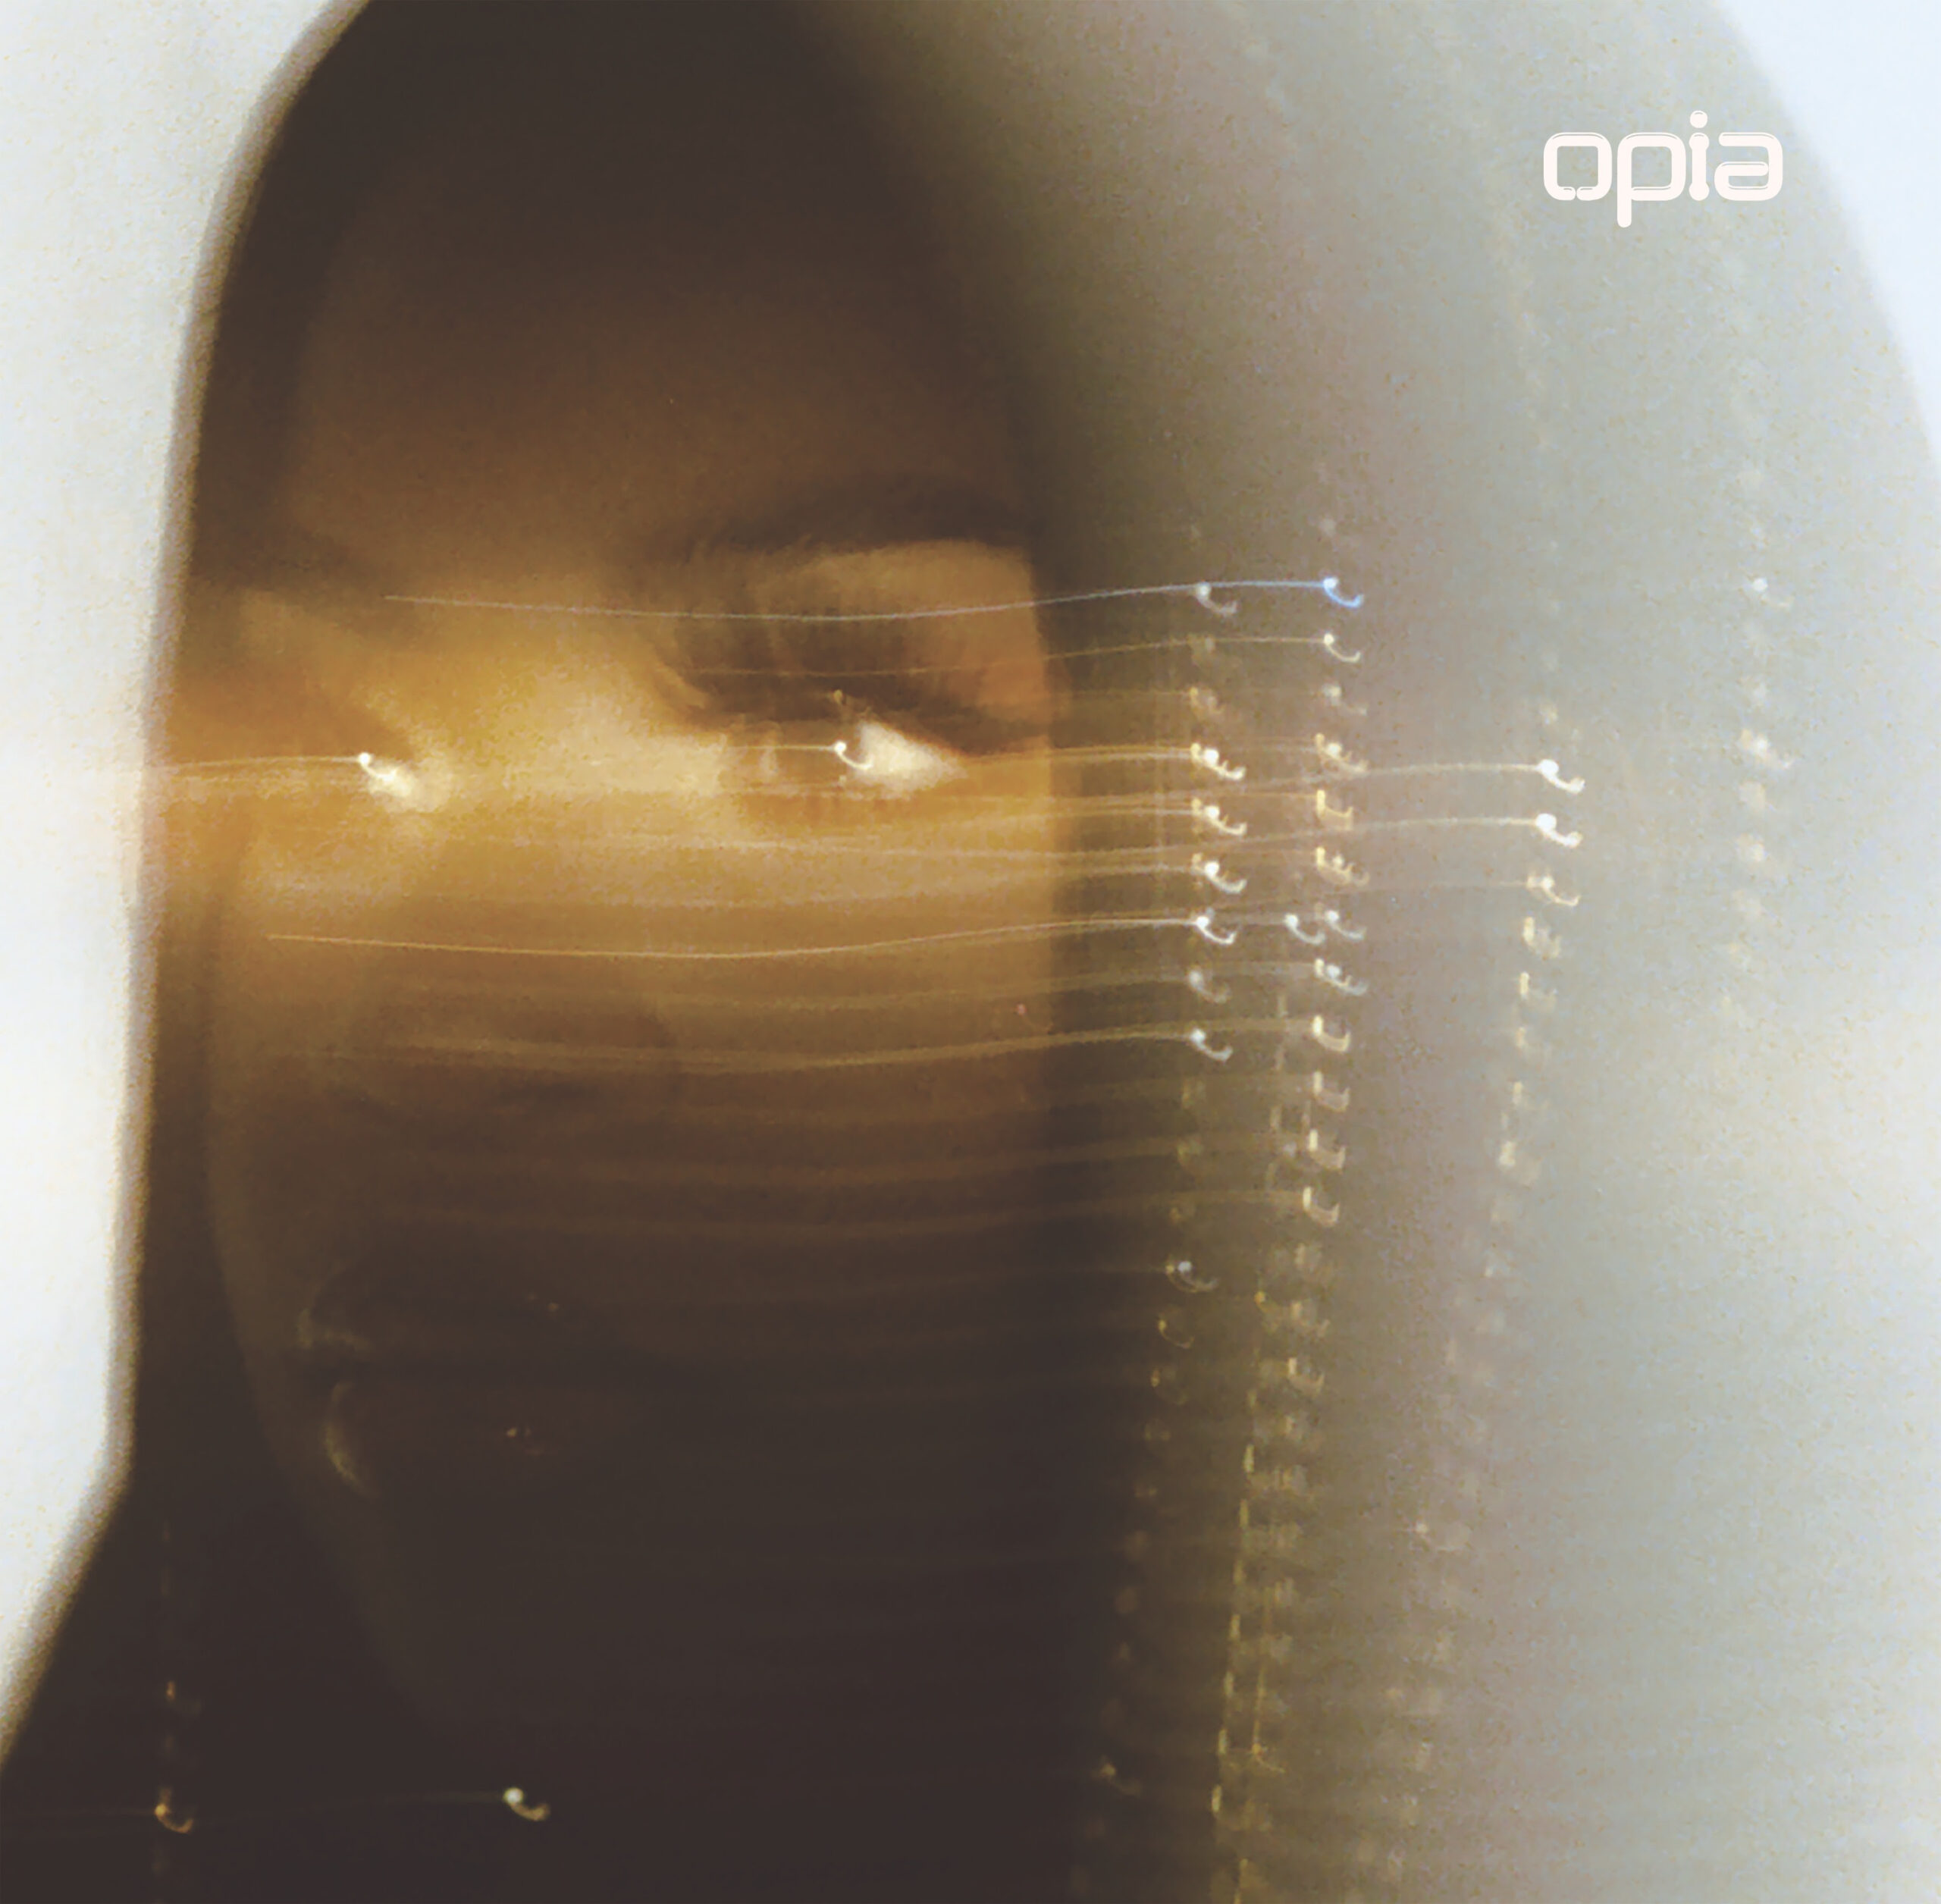 Toronto Singer Savannah Ré Delivers “Opia” Album